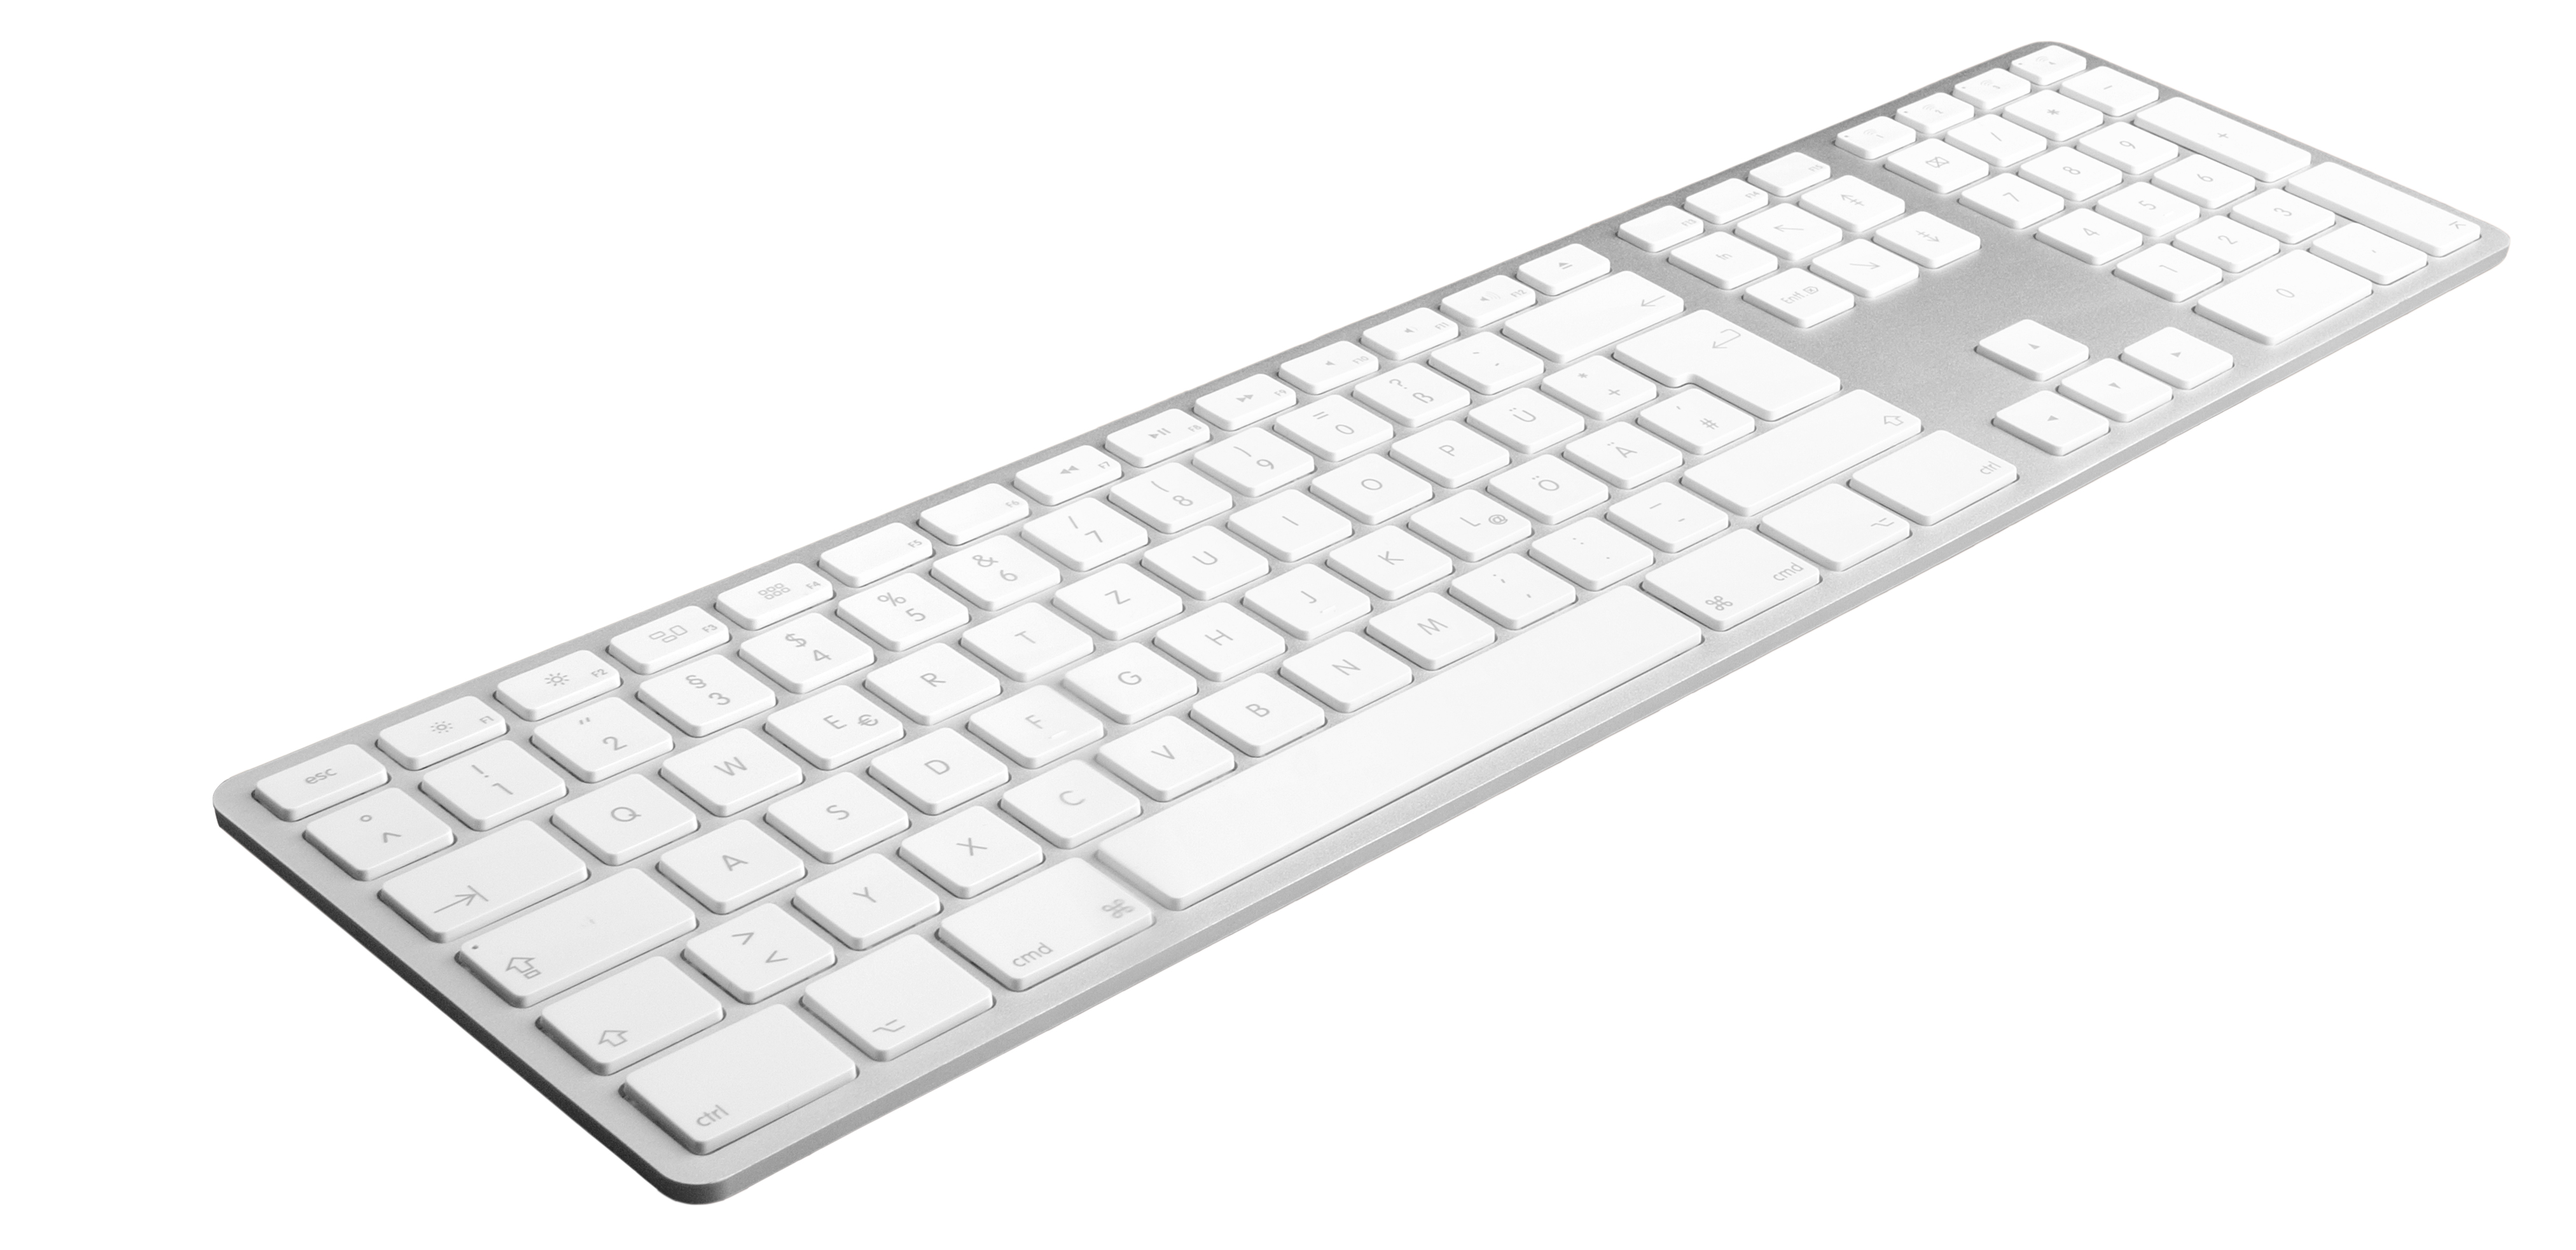 JENIMAGE Ergonomische Tastatur für Mac Jahr Lebensdauer, DE Win Batterie Tastatur 1 Kabellos Layout